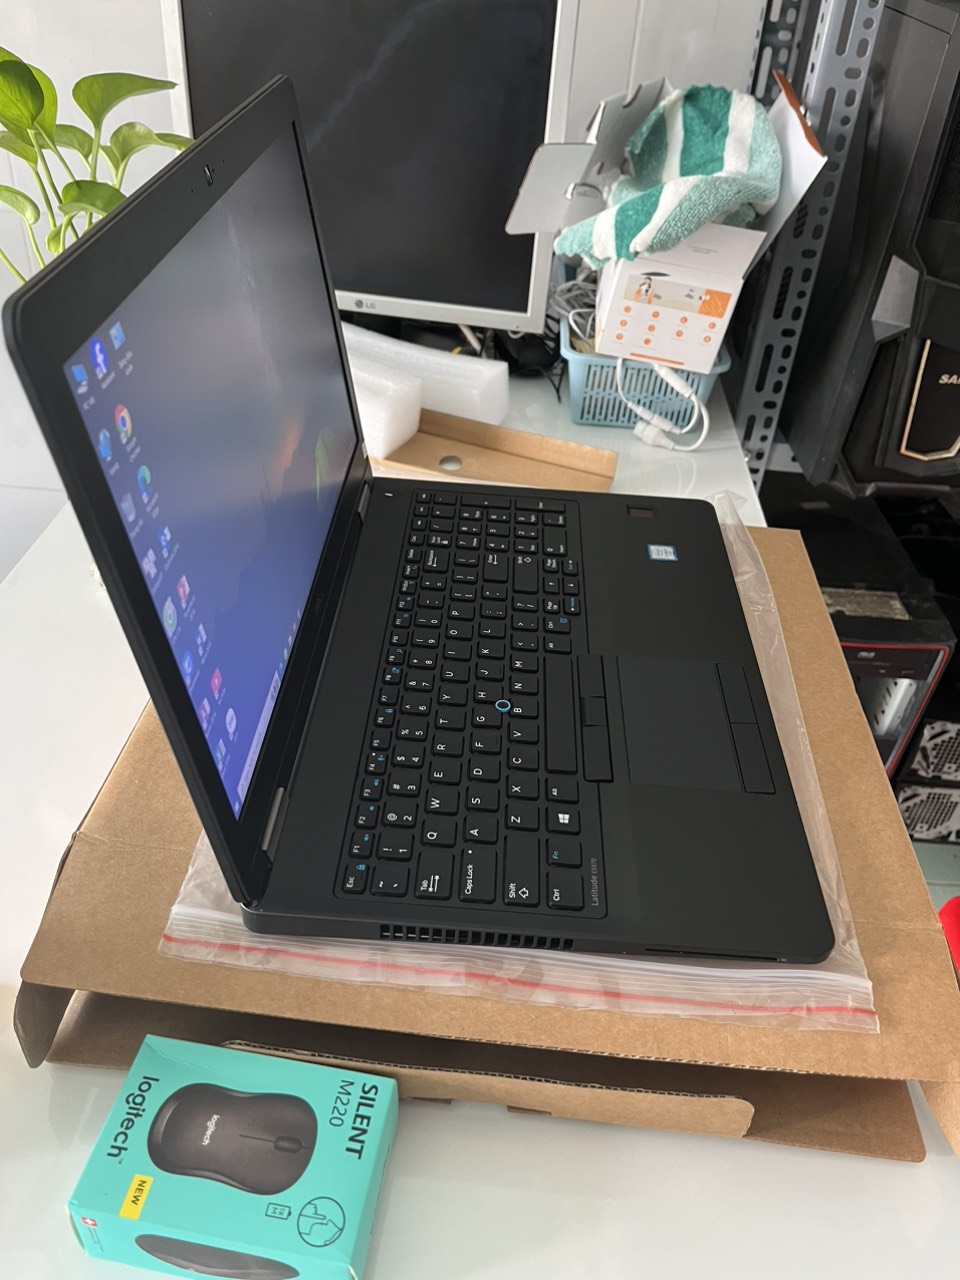 SUPER SALE: Laptop Dell Chính Hãng - Giá Cực Sốc Chỉ Từ 4 Triệu! - Ảnh 4